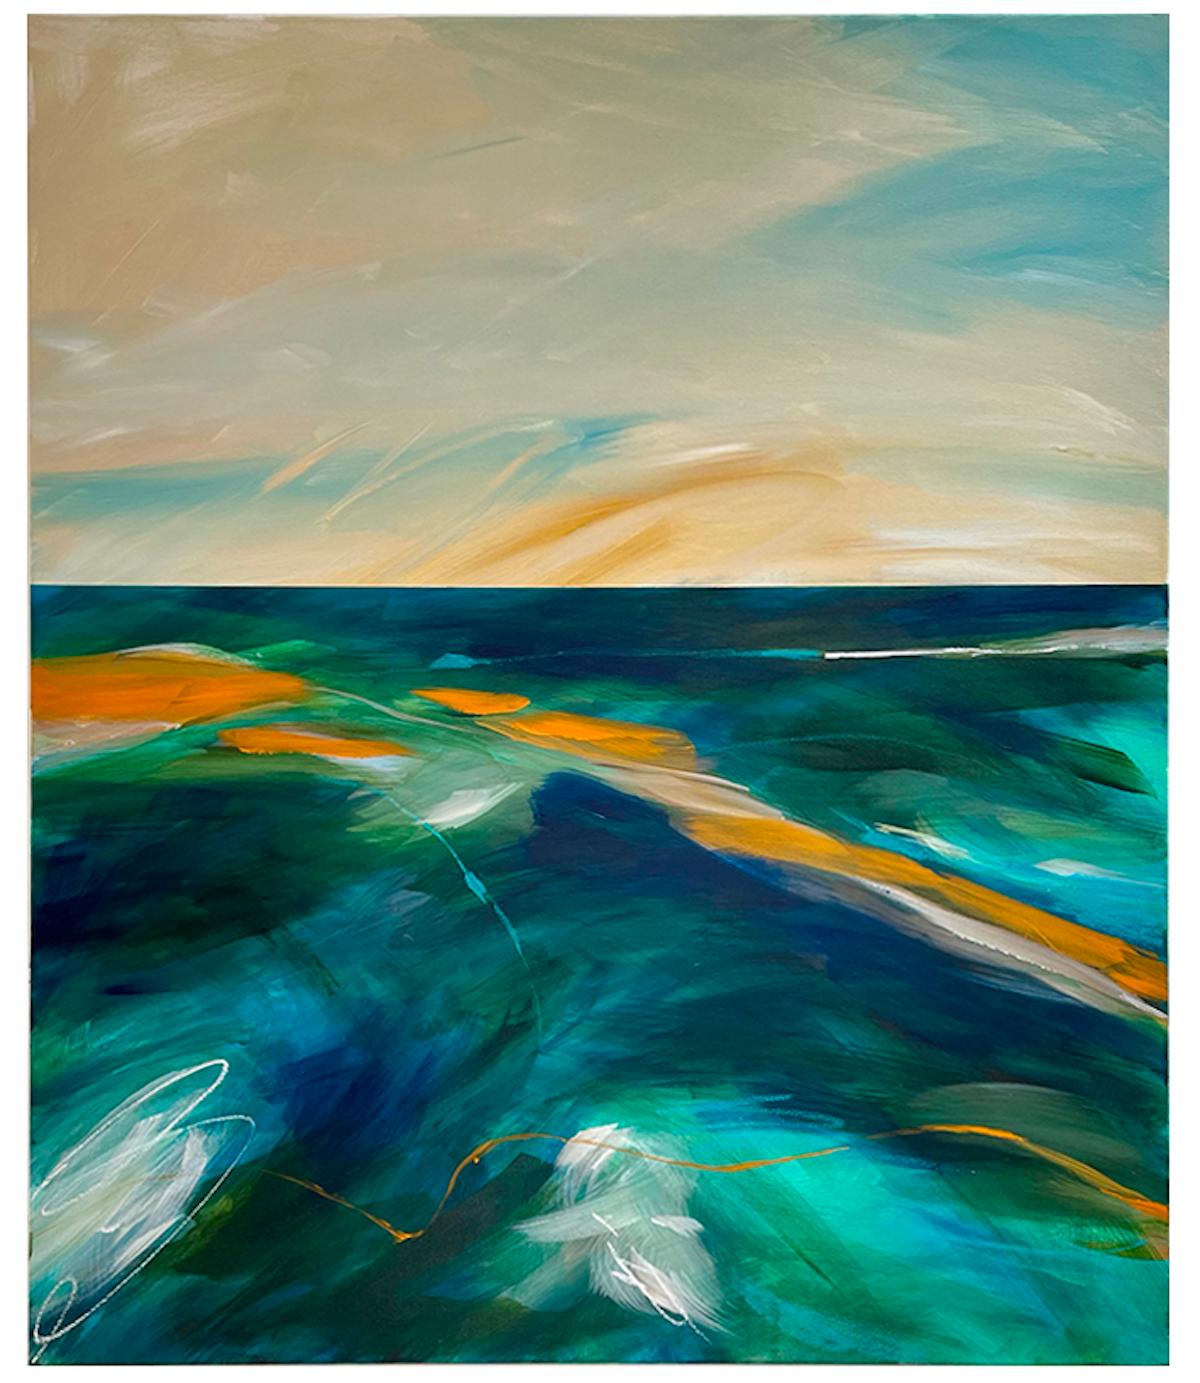 Abstract Painting Luana Asiata - The Causeway, peinture abstraite originale de paysage marin, écume d'eau noire dans l'Essex